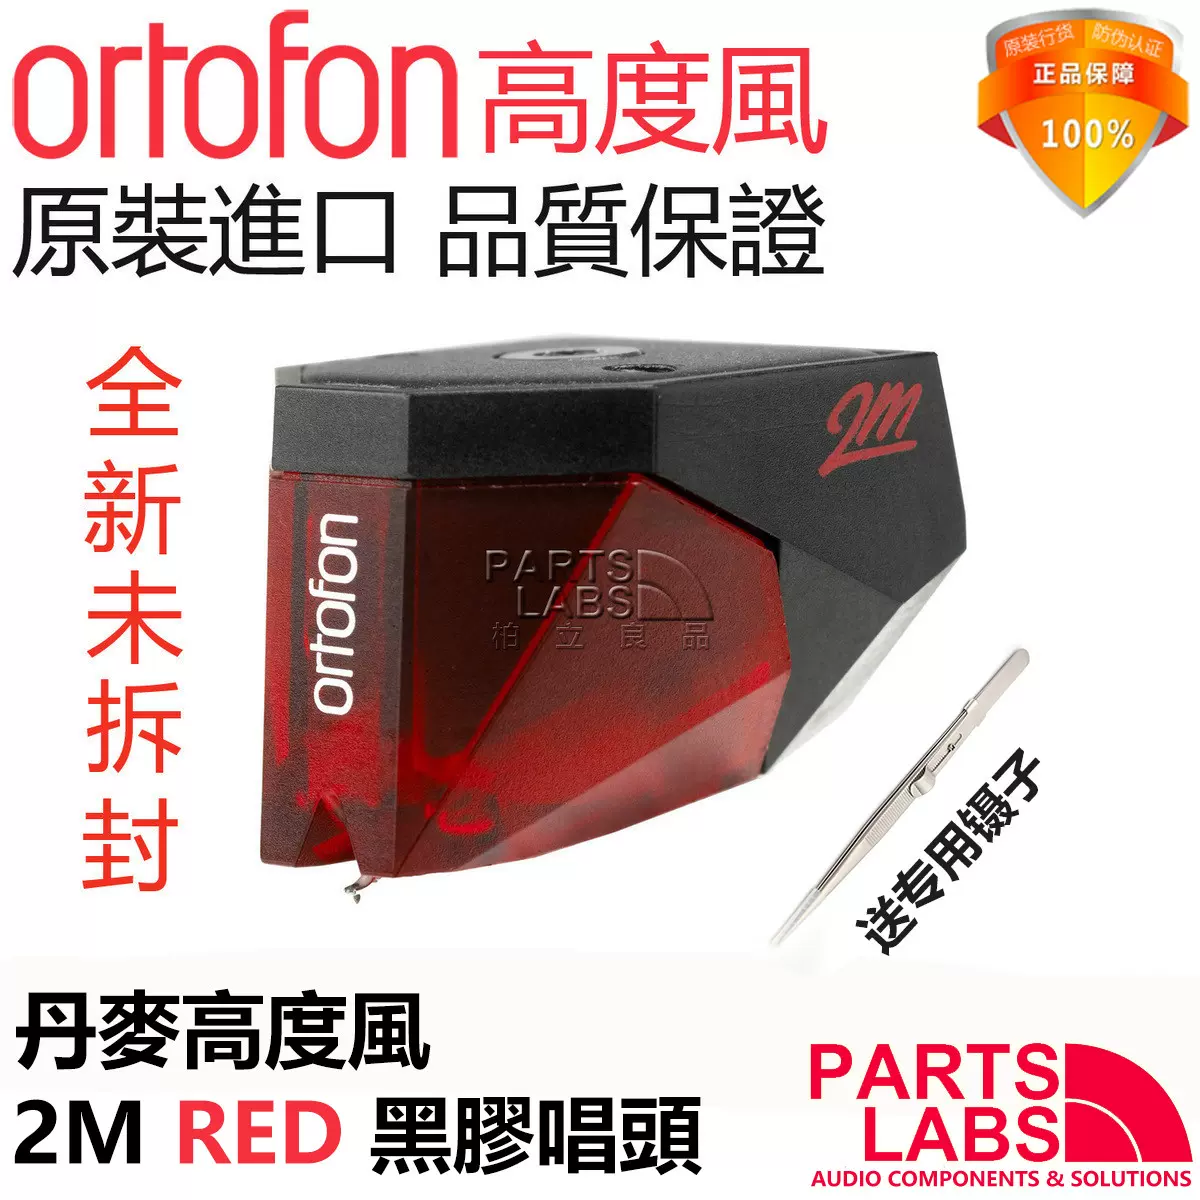 原裝丹麥Ortofon高度風2M RED 鑽石唱針MM動磁黑膠唱頭唱針-Taobao